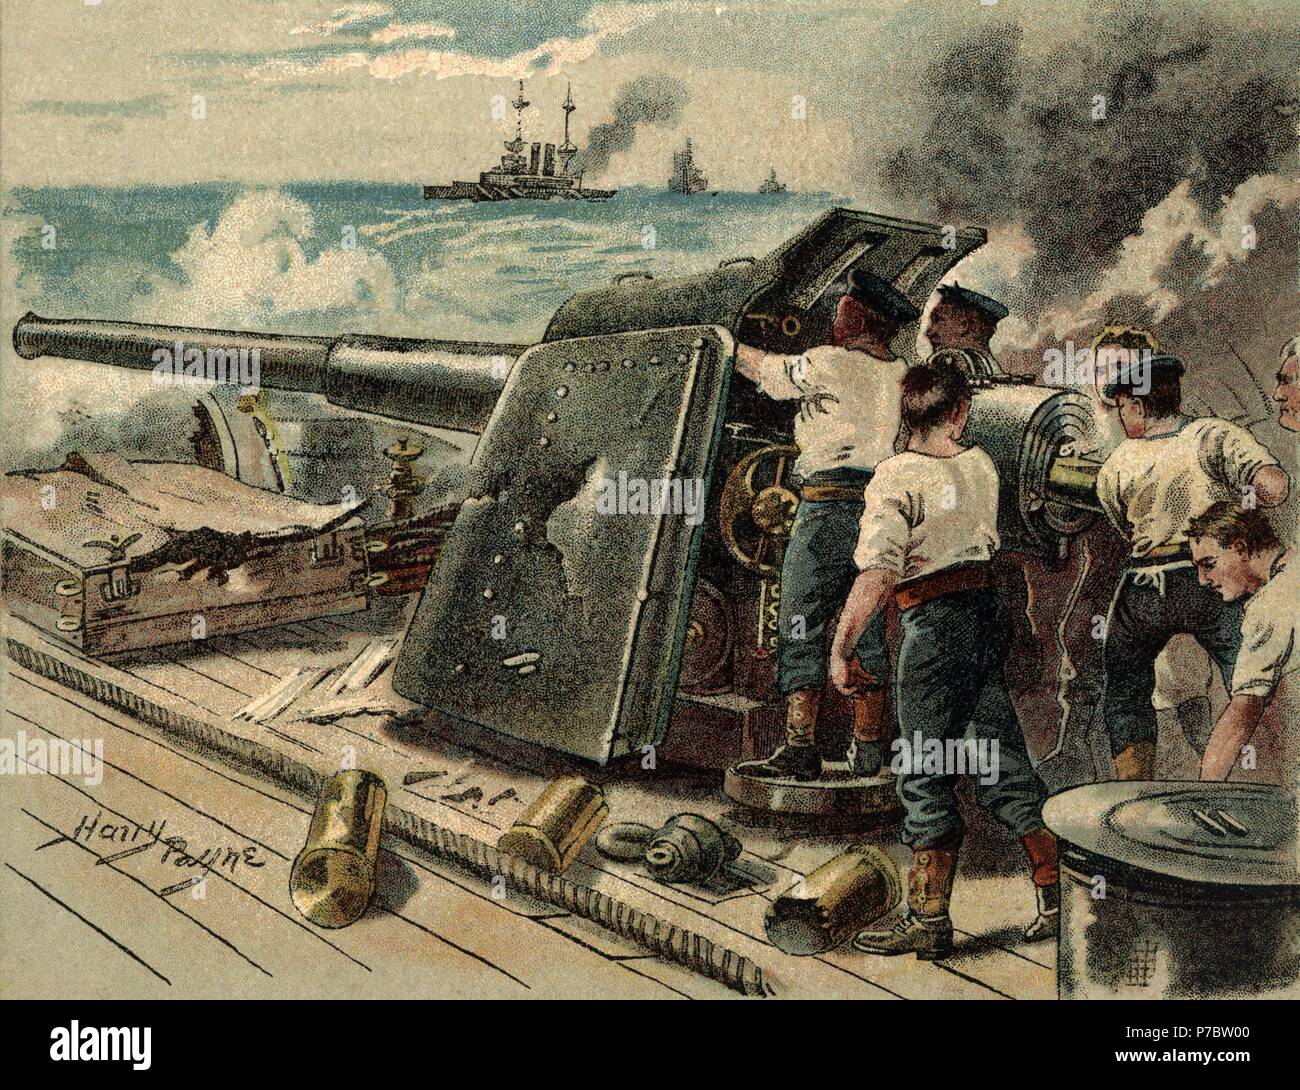 Europa. Primera guerra mundial (1914-1918). Cubierta de un barco inglés equipado con un cañón de seis pulgadas durante unas maniobras navales. Stock Photo